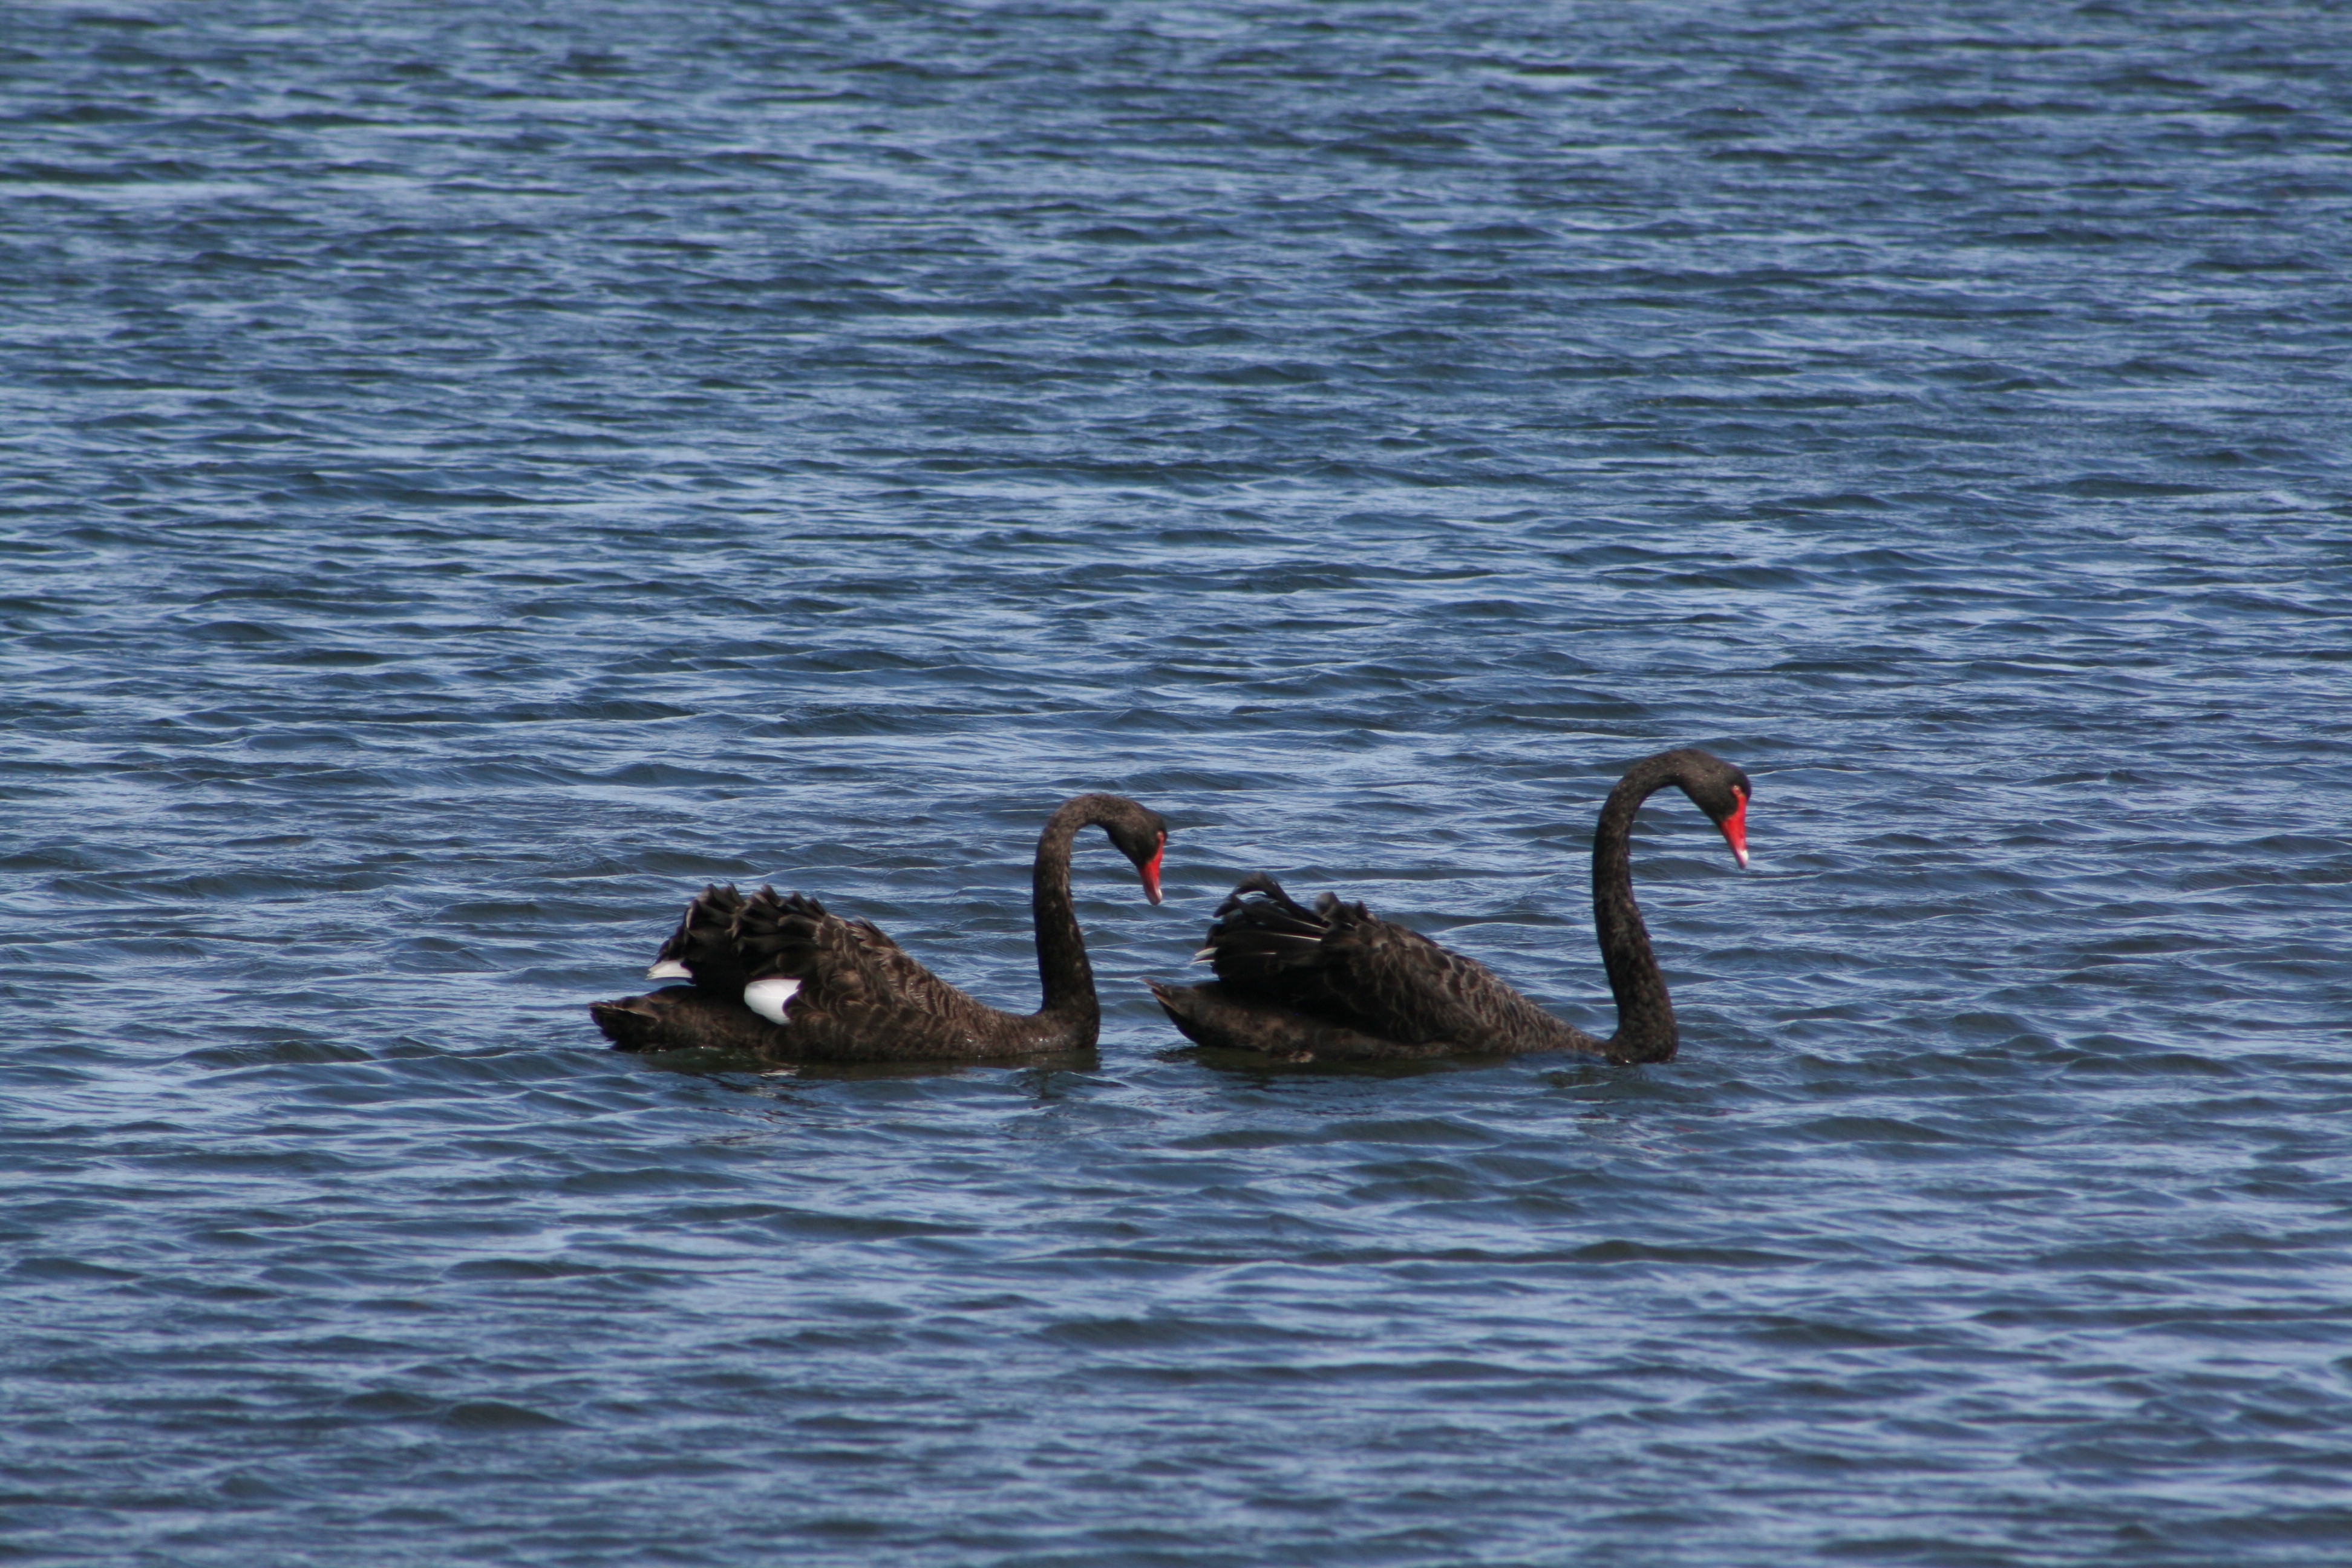 Black_Swan-Cisne_Negro-St_Helens-Tasmania